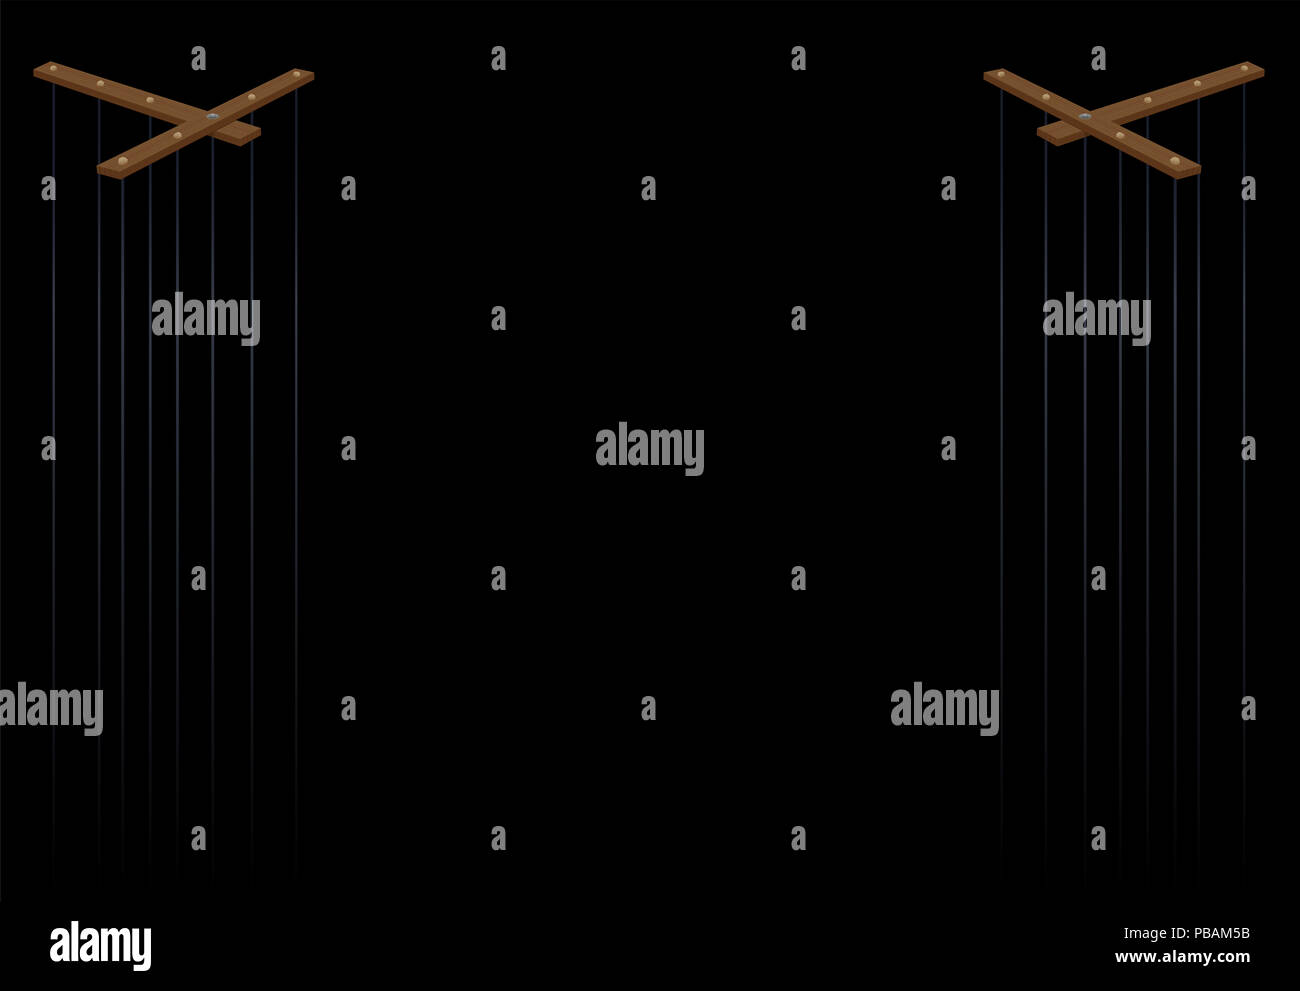 Puppentheater. Zwei hölzerne Marionette Kontrolle Bars mit langen Strings - Abbildung auf schwarzen Hintergrund. Stockfoto